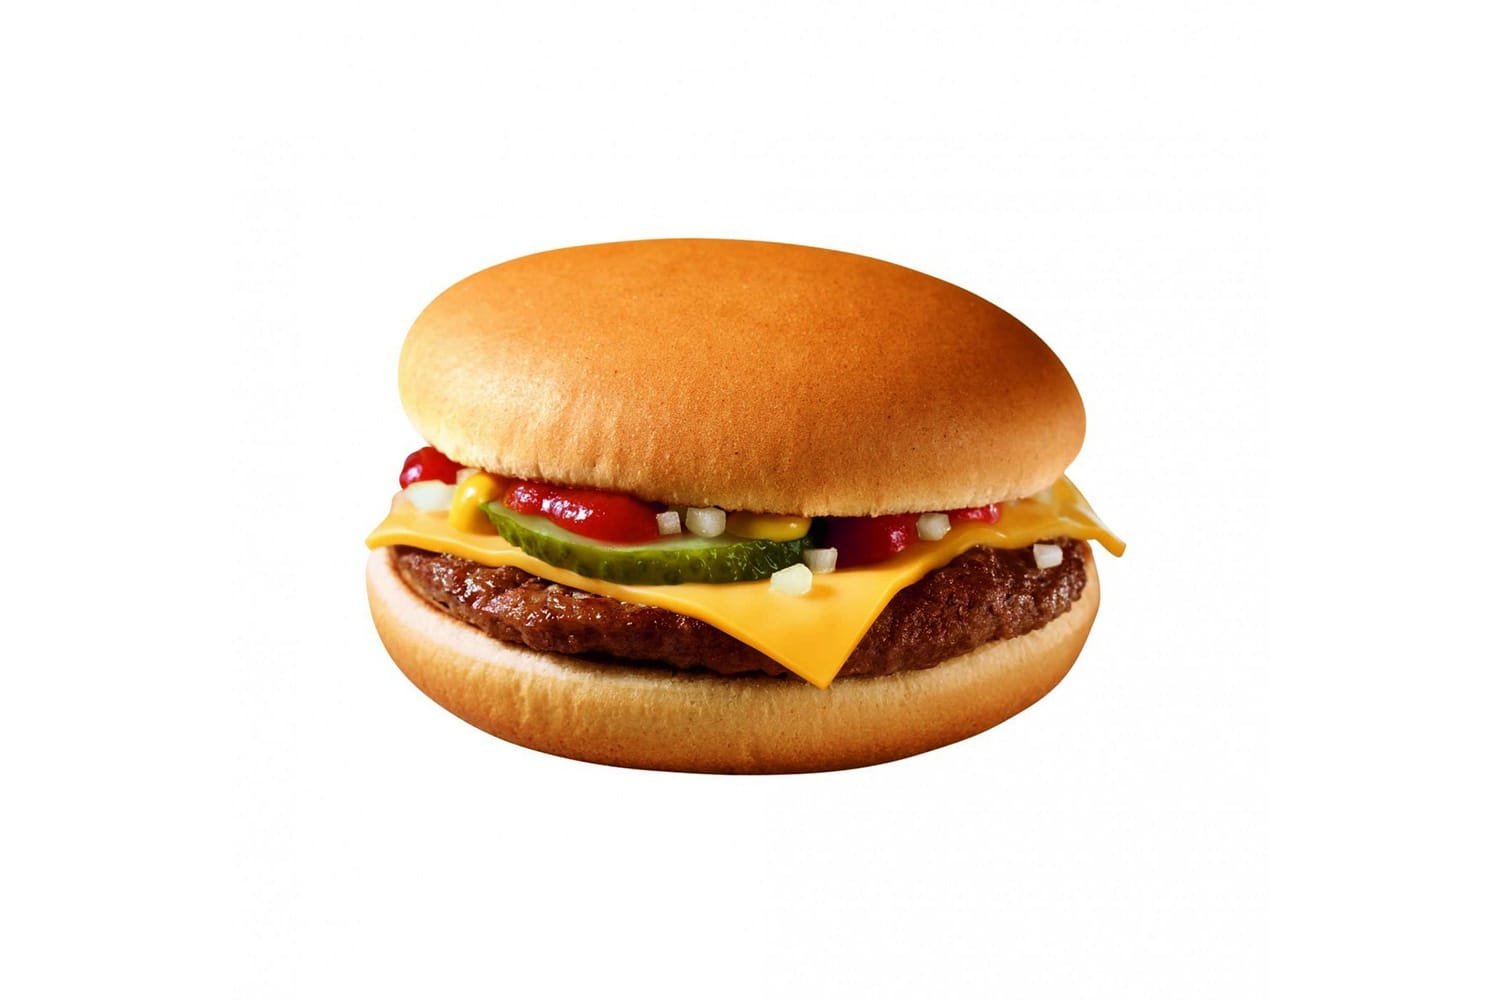 In einem Cheeseburger des Burgerriesen McDonalds stecken bei 113 Gramm Gewicht gerade 13 Gramm Fett und 304 Kalorien